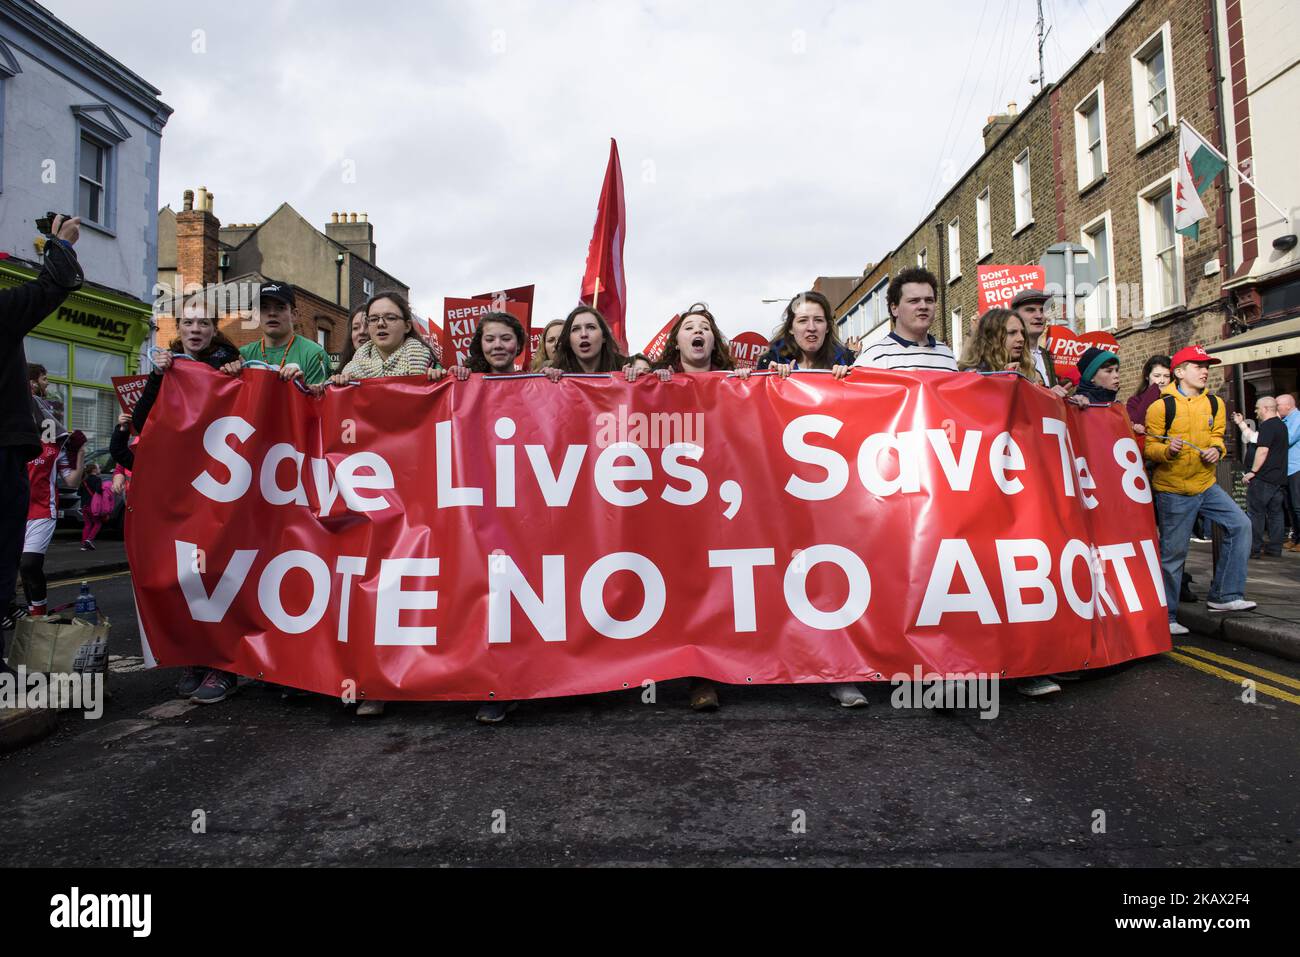 Proteste da tutta l'Irlanda con banner anti-aborto durante il Rally All-Ireland for Life (Save the 8th) - marzo per salvare la 8th modifica della costituzione irlandese che protegge il loro diritto alla vita, e vieta l'aborto. Sabato 10 marzo 2017, Dublino, Irlanda. Il governo irlandese ha confermato che terrà un referendum sulla riforma delle severe leggi anti-aborto del paese entro la fine di maggio. L'articolo 40.3.3, noto come l'ottavo emendamento della Costituzione irlandese, riconosce la parità di diritto alla vita della madre e del nascituro. Se il voto è favorevole all'abrogazione, il Foto Stock